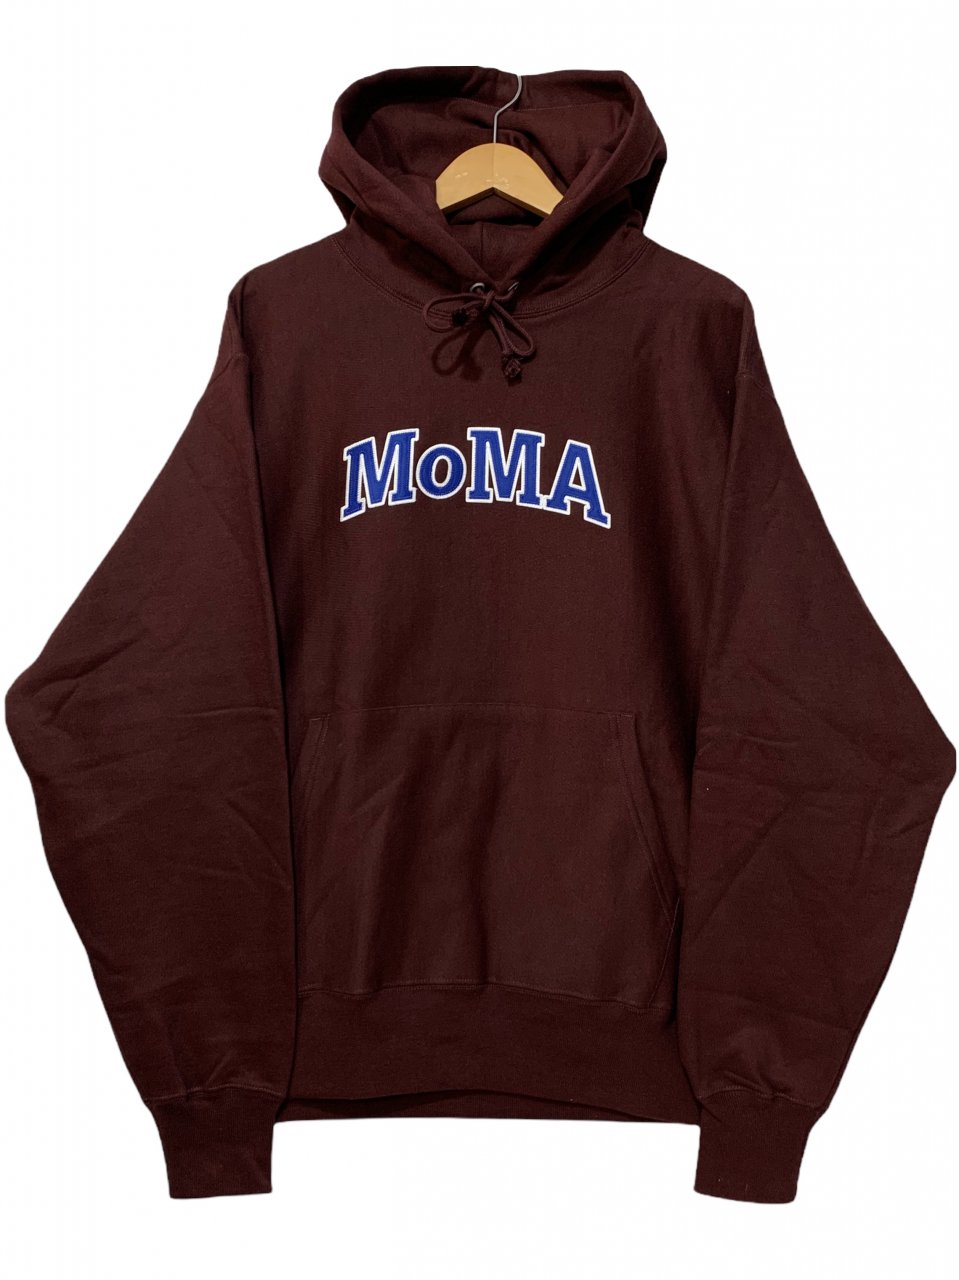 新品 US企画 Champion × MoMA Limited Edition Reverse Weave Sweat Hoodie (MAROON)  チャンピオン モマ リバースウィーブ パーカー - NEWJOKE ONLINE STORE